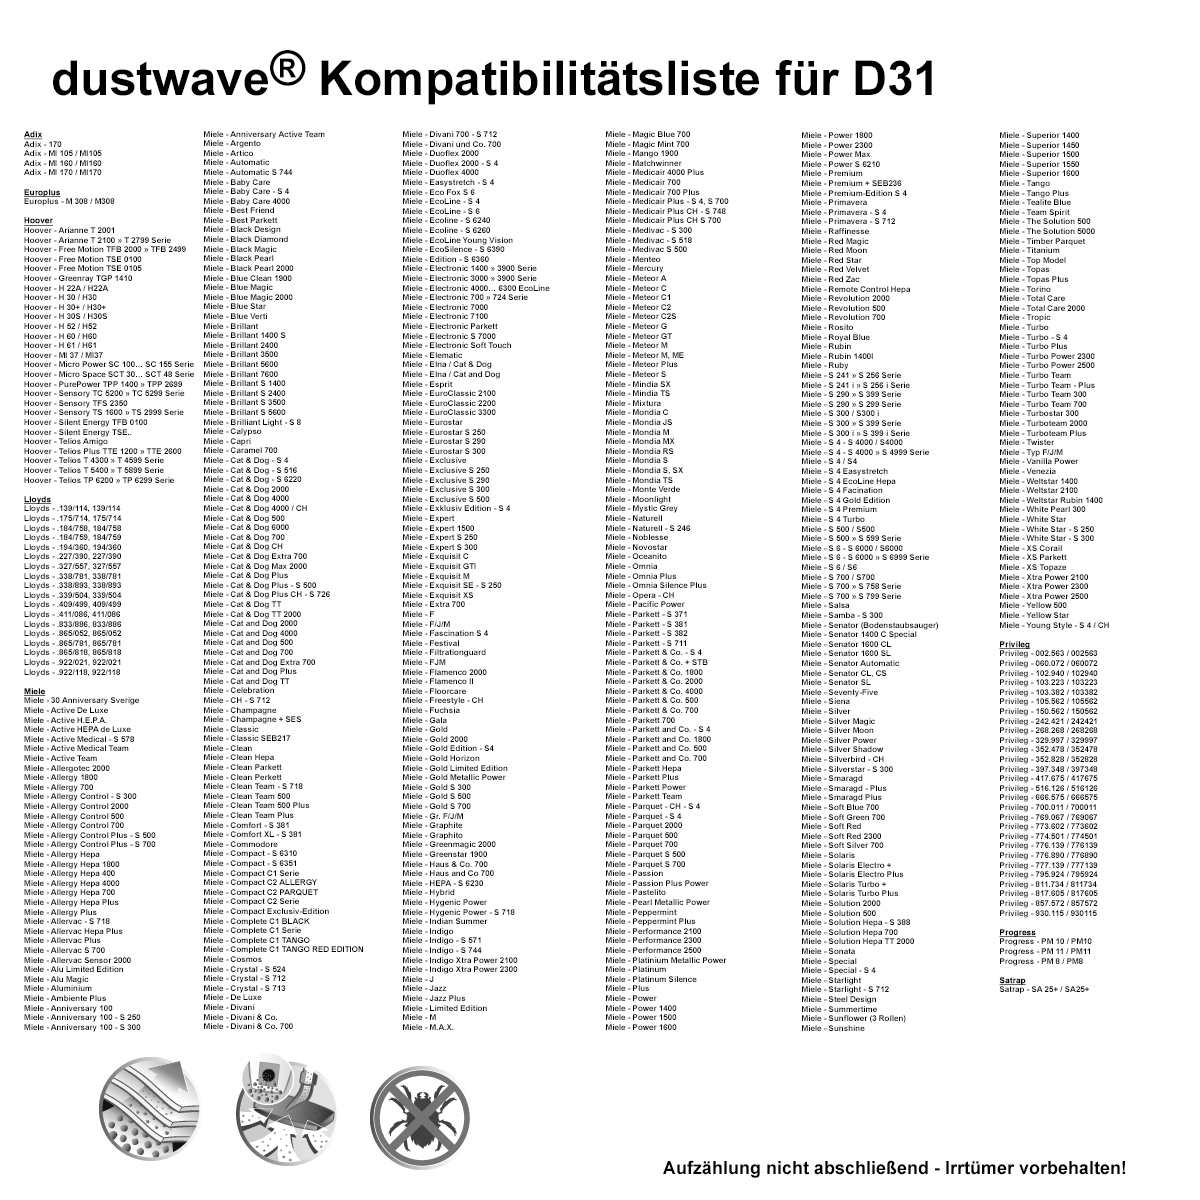 Dustwave® 20 Staubsaugerbeutel für Miele S5151 / S 5151 - hocheffizient, mehrlagiges Mikrovlies mit Hygieneverschluss - Made in Germany